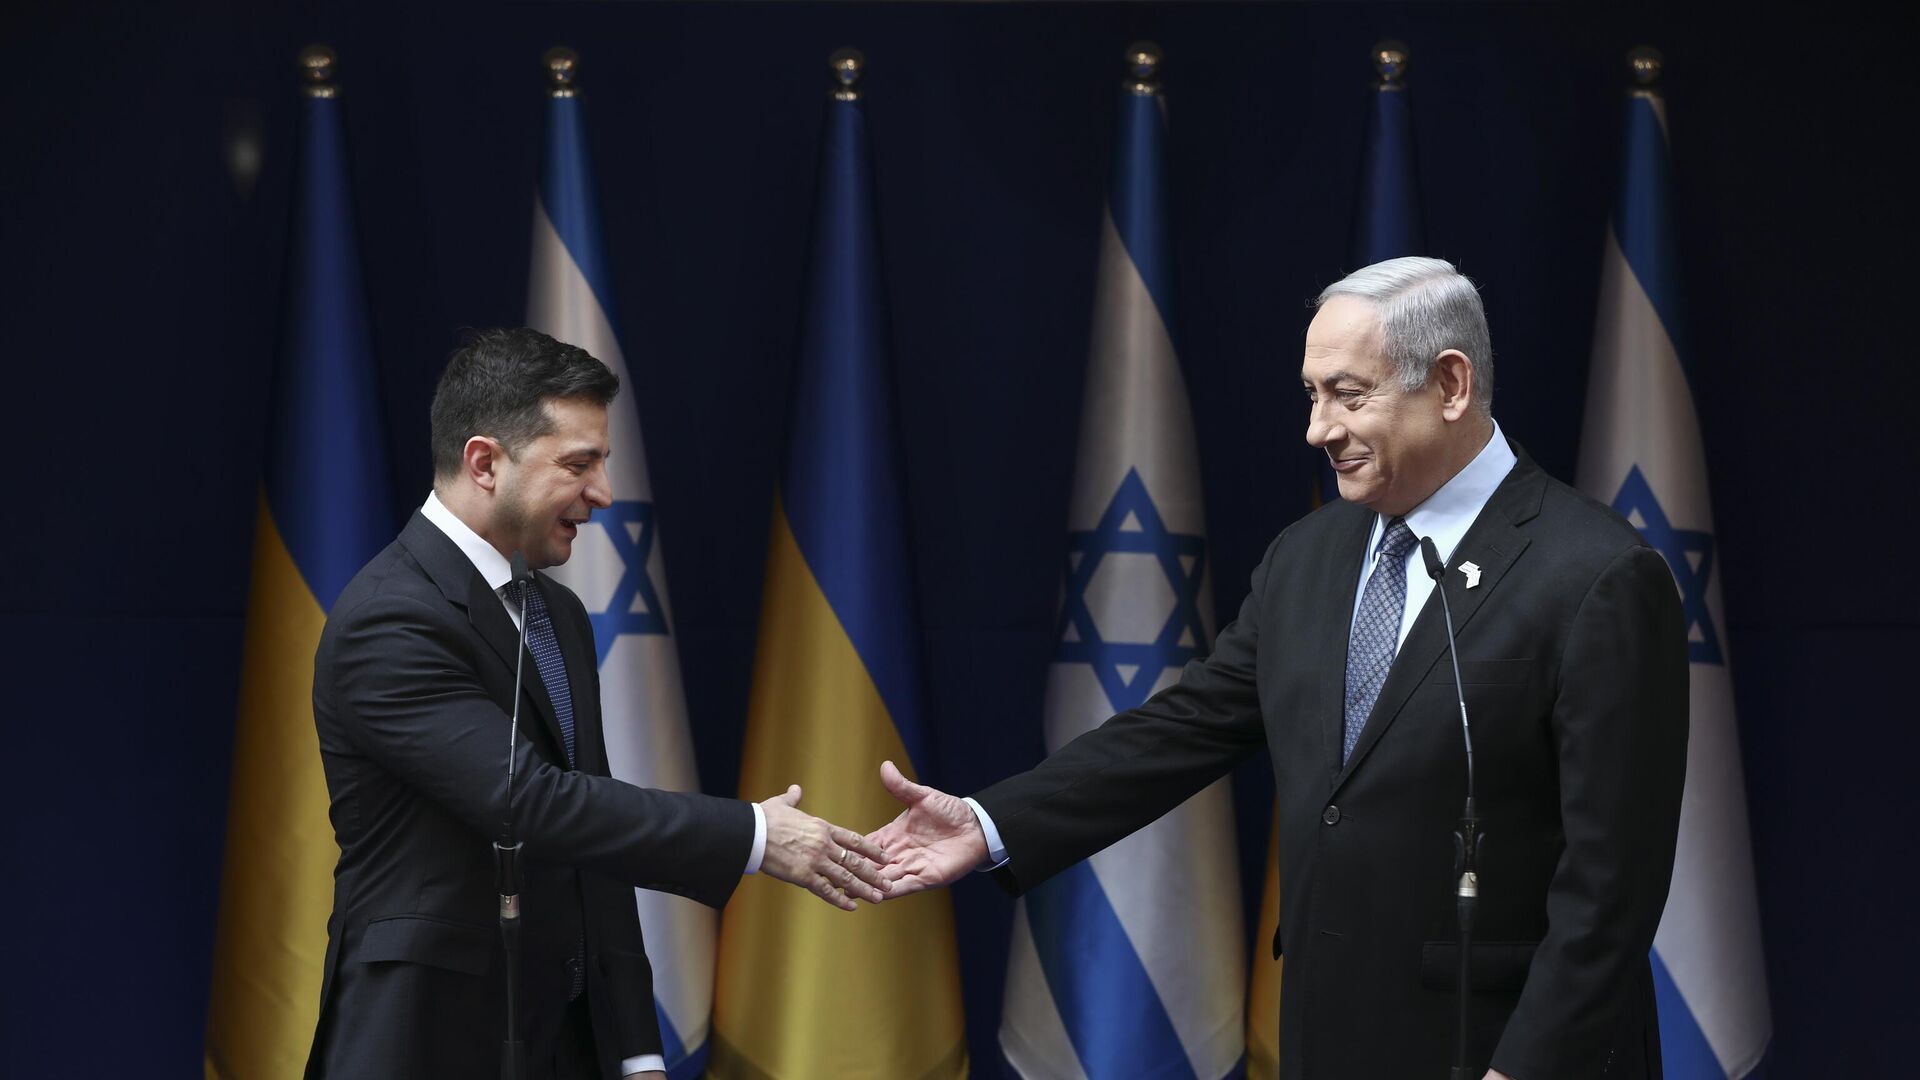 Премьер-министр Израиля Биньямин Нетаньяху (справа) и президент Украины Владимир Зеленский обмениваются рукопожатием во время встречи в Иерусалиме в пятницу, 24 января 2020 г. - ИноСМИ, 1920, 13.06.2023